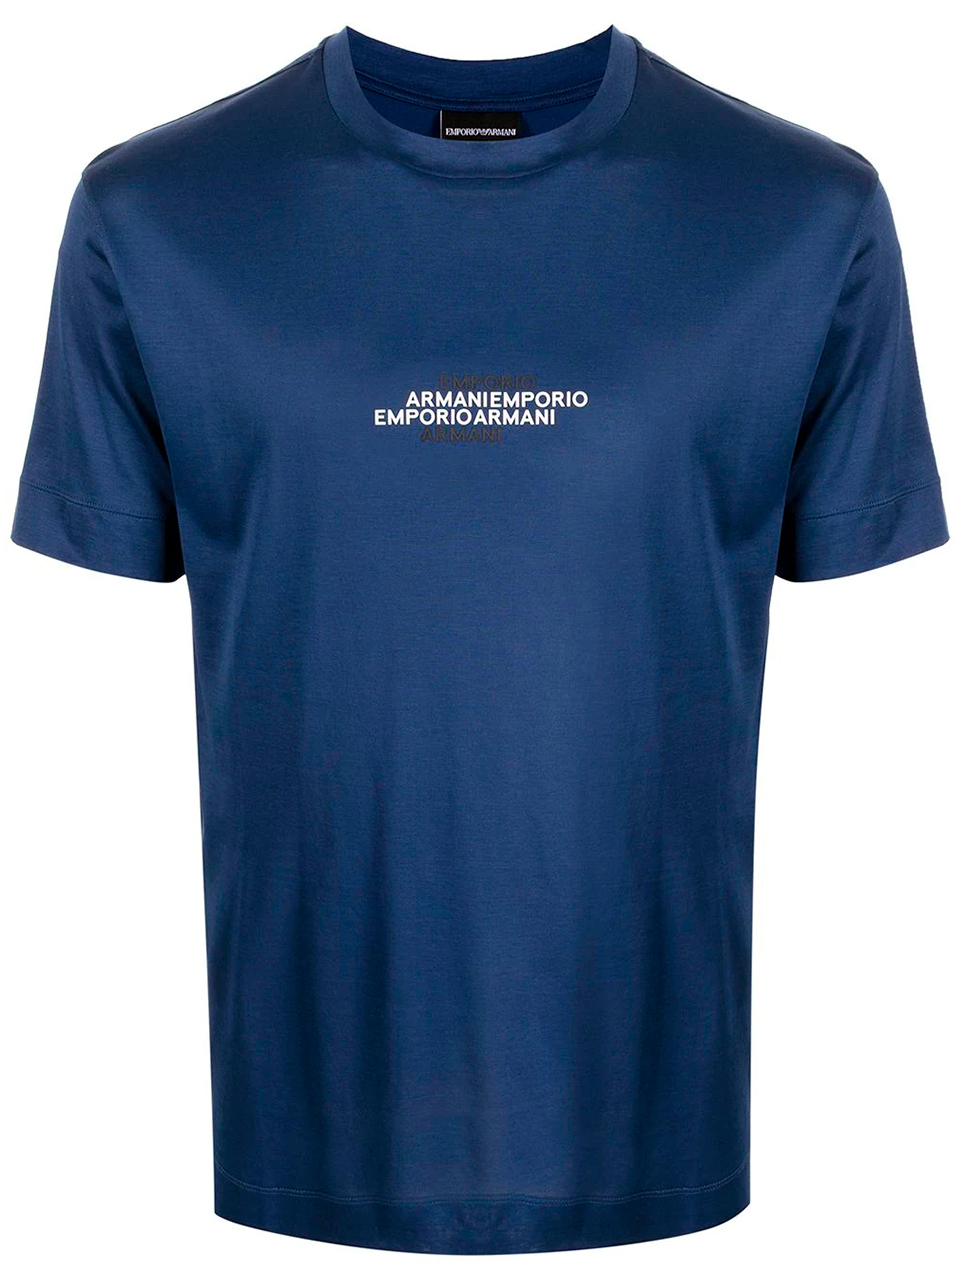 Imagem de: Camiseta Emporio Armani Azul com Logo Bicolor